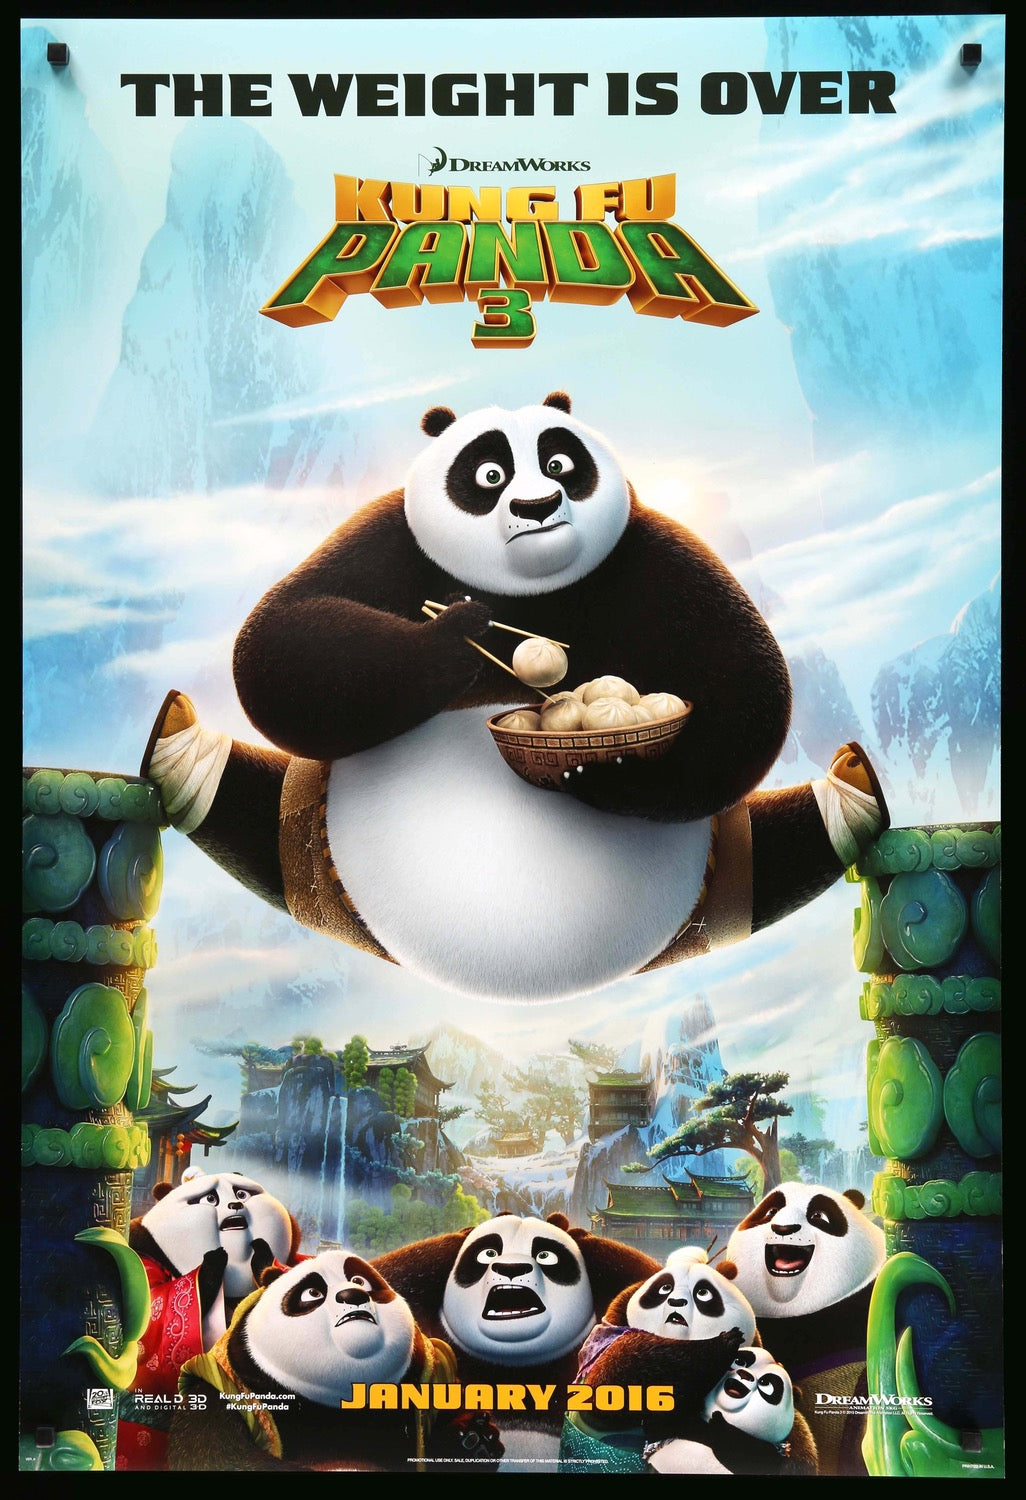 Kung Fu Panda 3 (2016) original movie poster for sale at Original Film Art